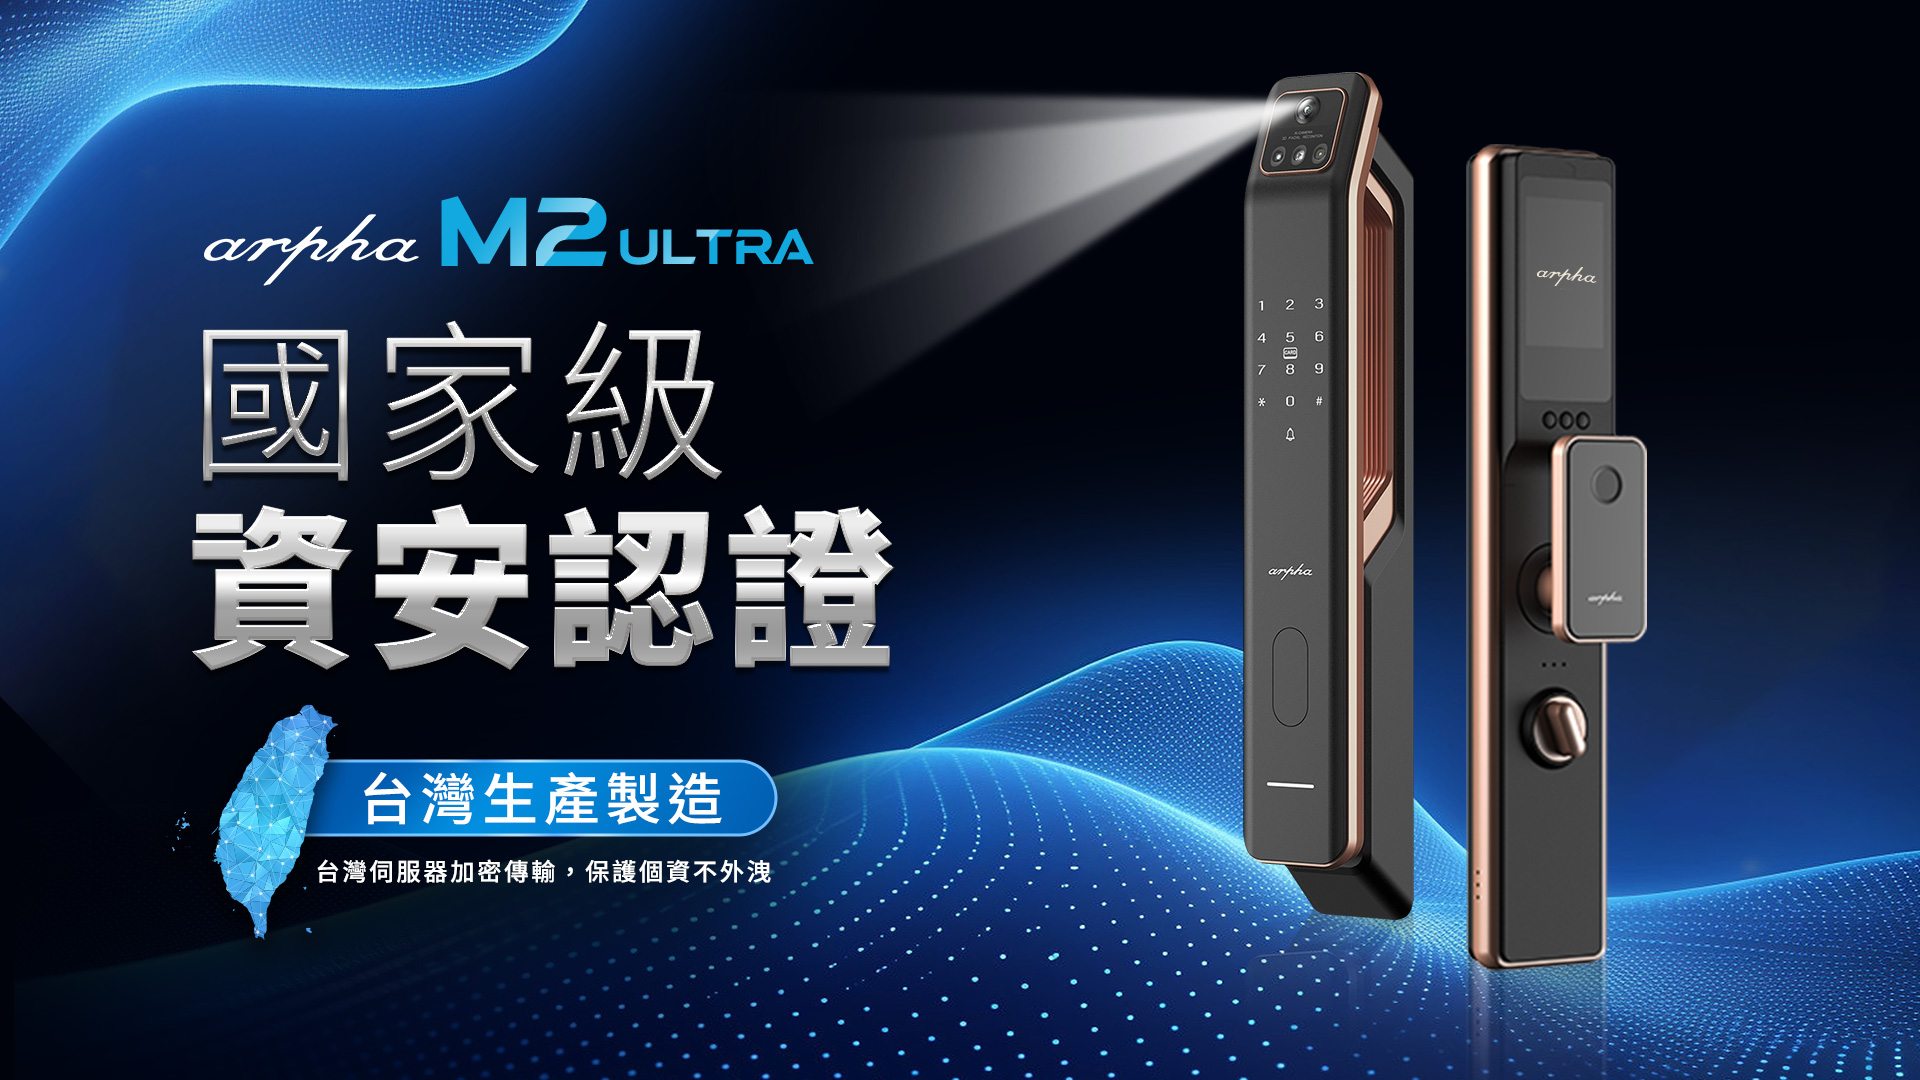 「『Arpha M2 Ultra』 3D人臉辨識靜音智慧電子鎖」全機皆由台灣設計、研發及製造，通過國家資安認證，以達到最安全的防護。